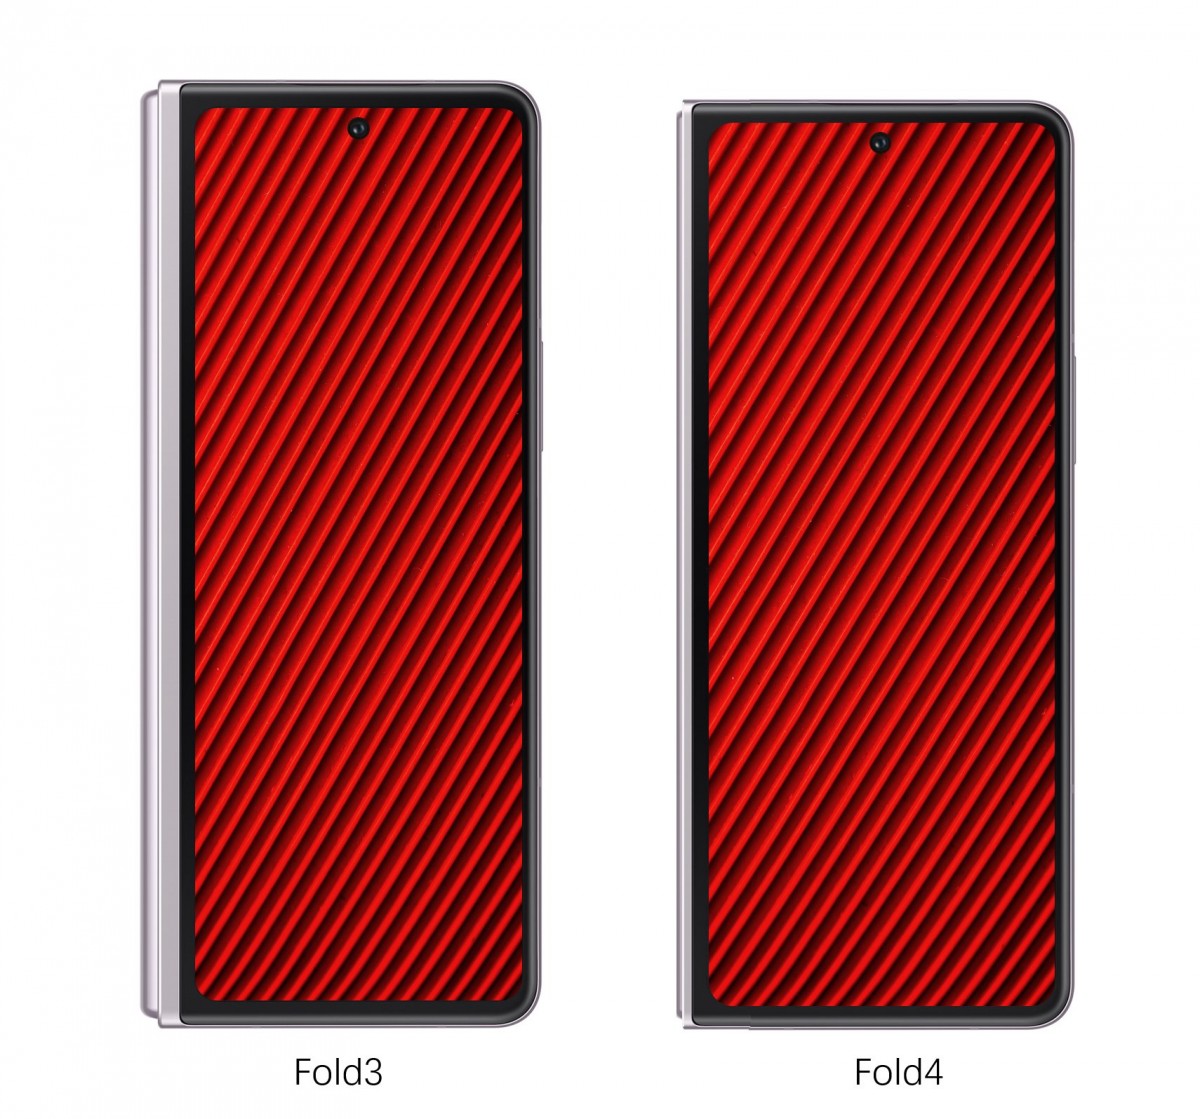 سيكون لدى Galaxy Z Fold4 نسبة عرض إلى ارتفاع مستقطنة مقارنة بسابقه